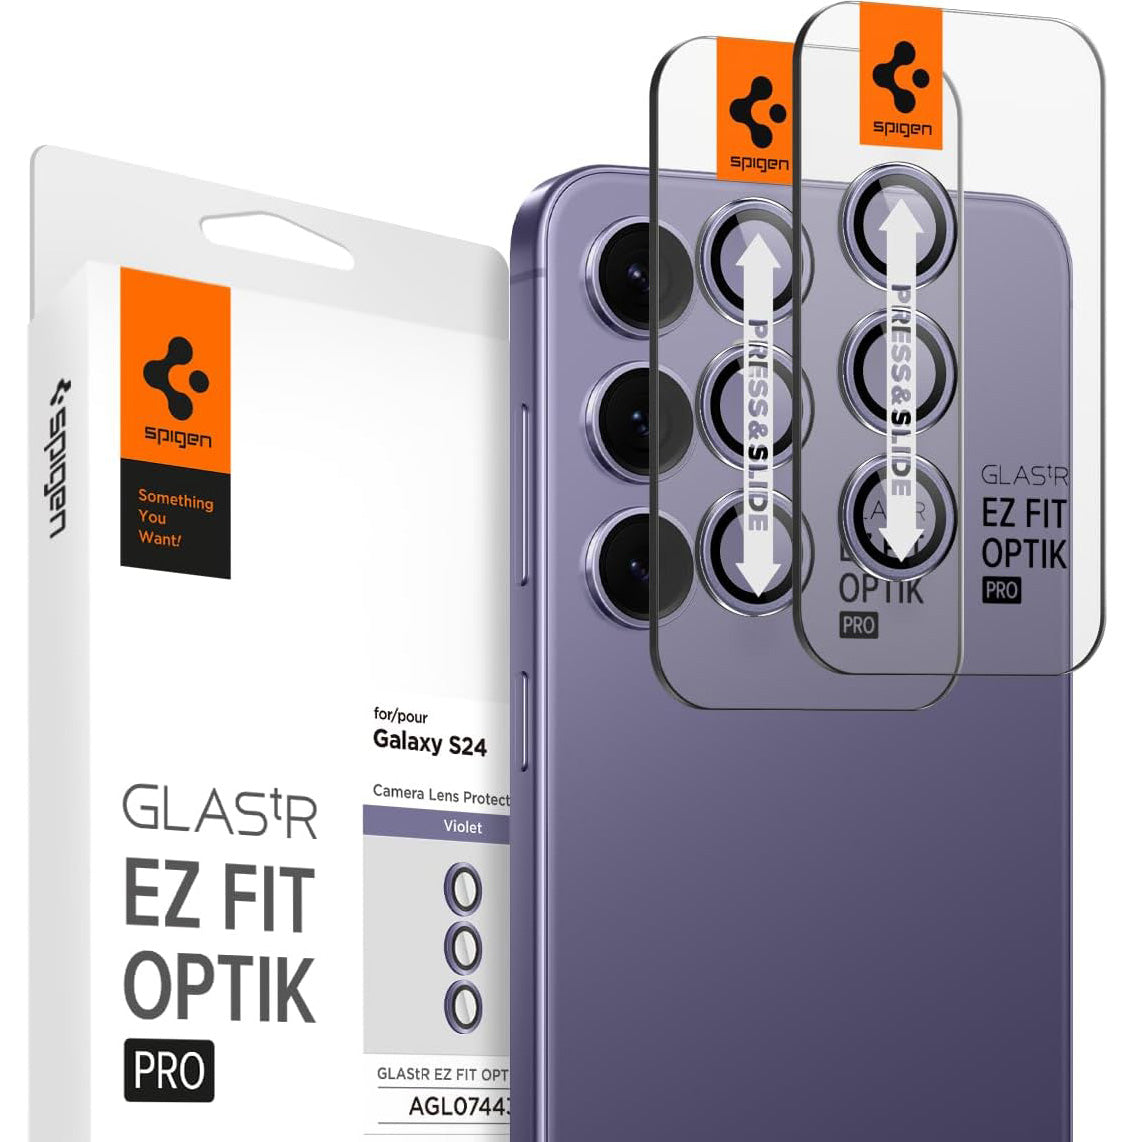 Glas für die Kamera für Galaxy S24, Spigen Glas.tR Ez Fit Optik Pro 2-Pack, Violett